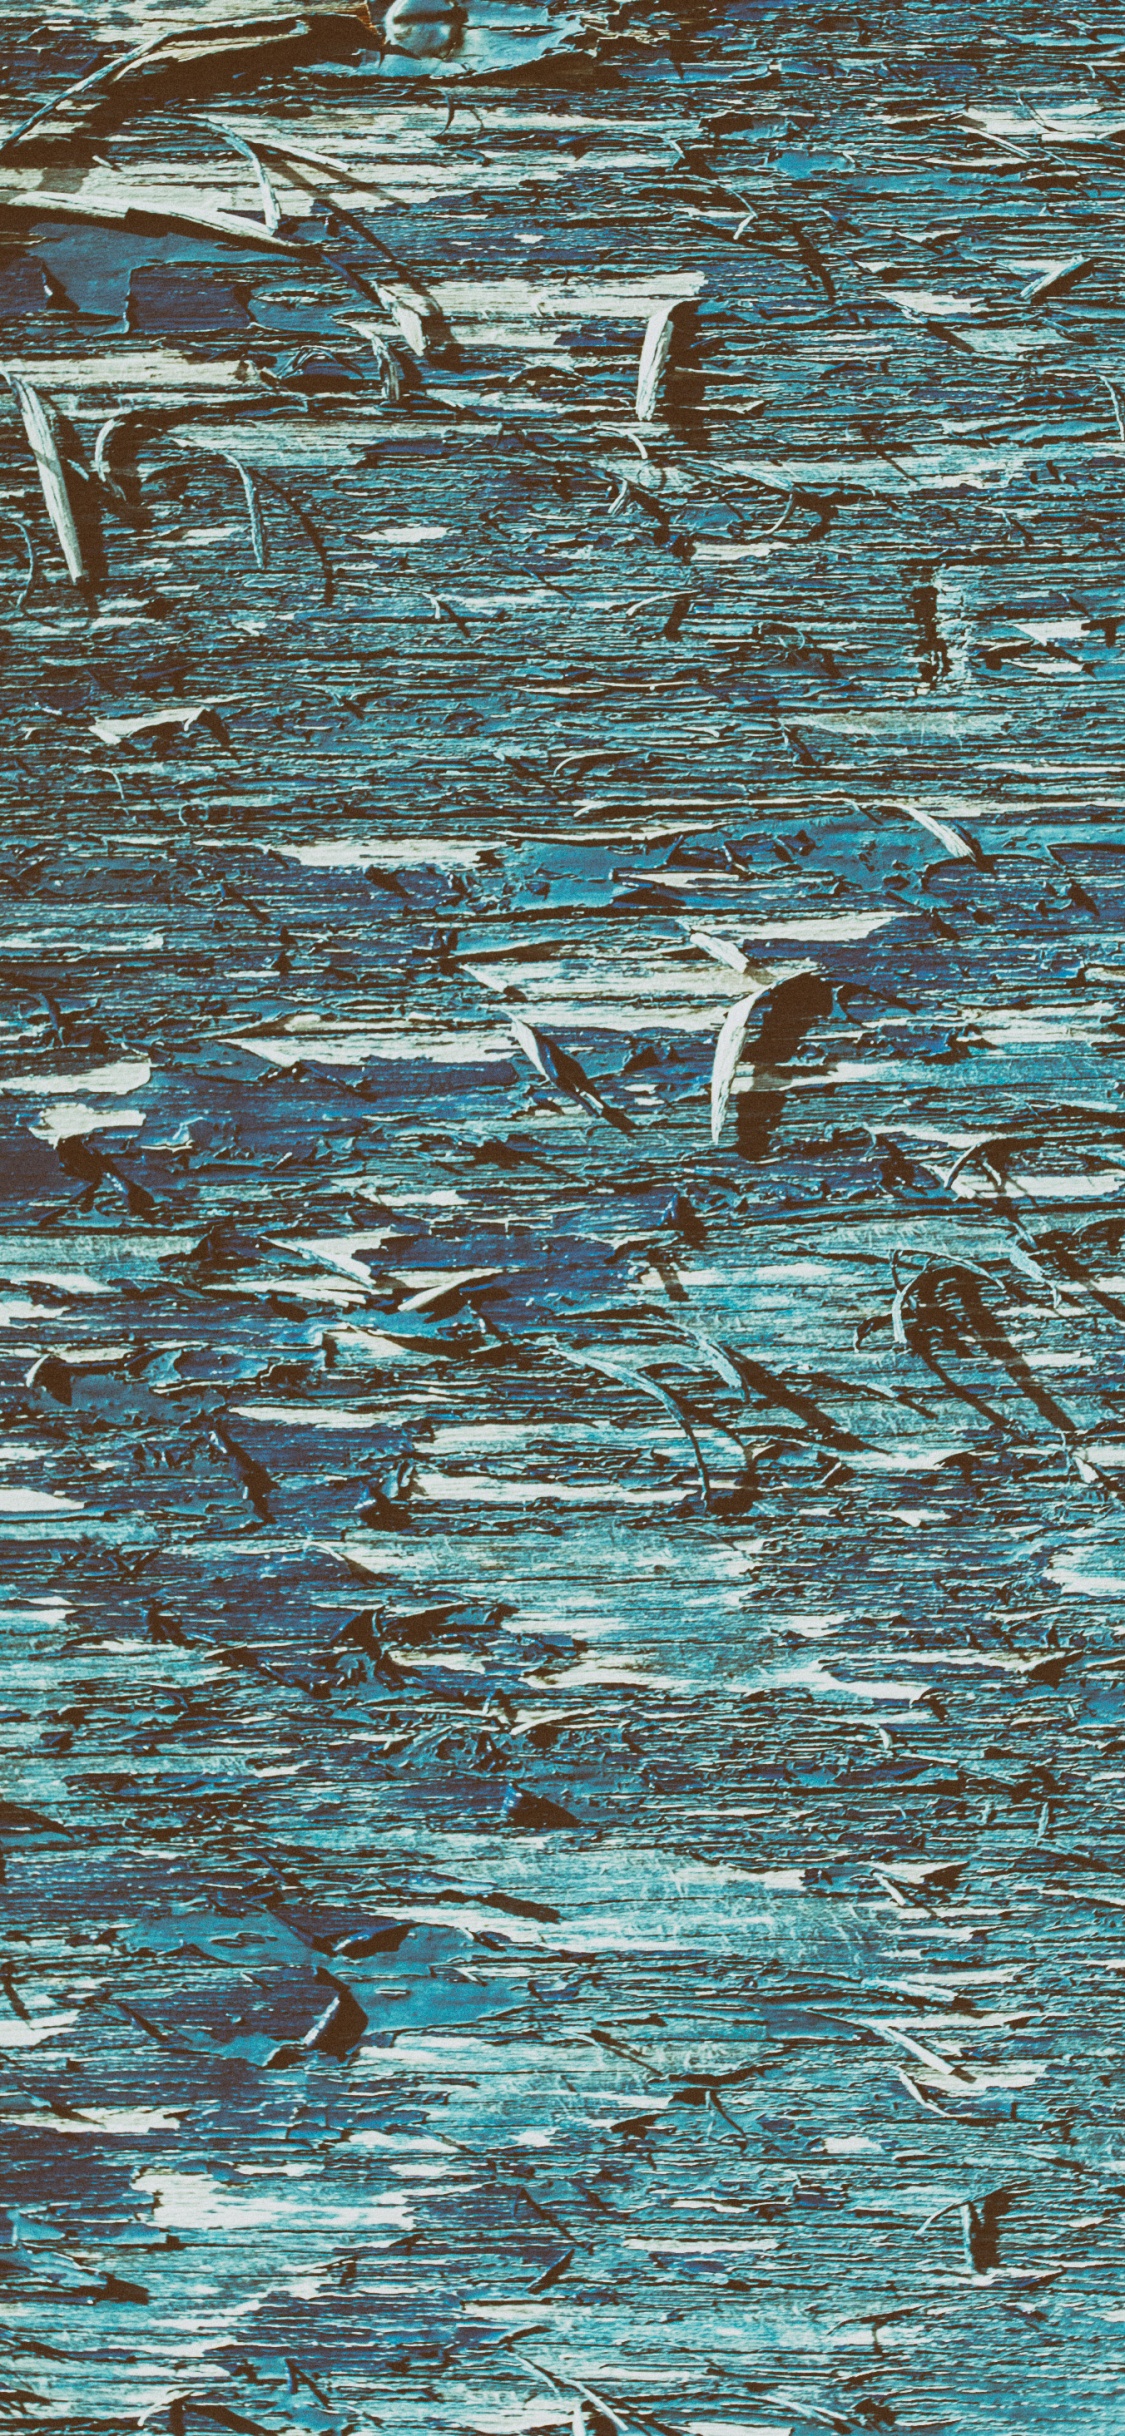 Weiße Und Schwarze Vögel Auf Dem Wasser. Wallpaper in 1125x2436 Resolution